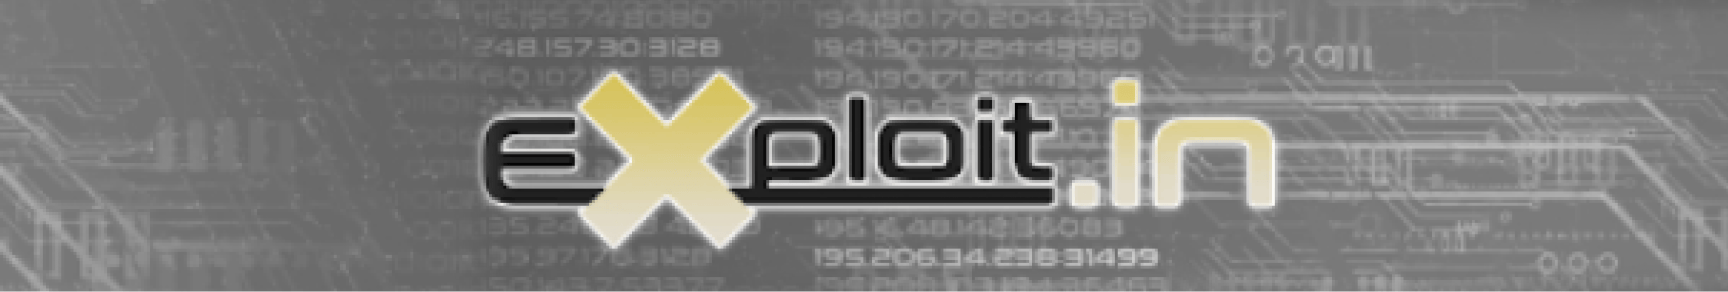 Exploit logo